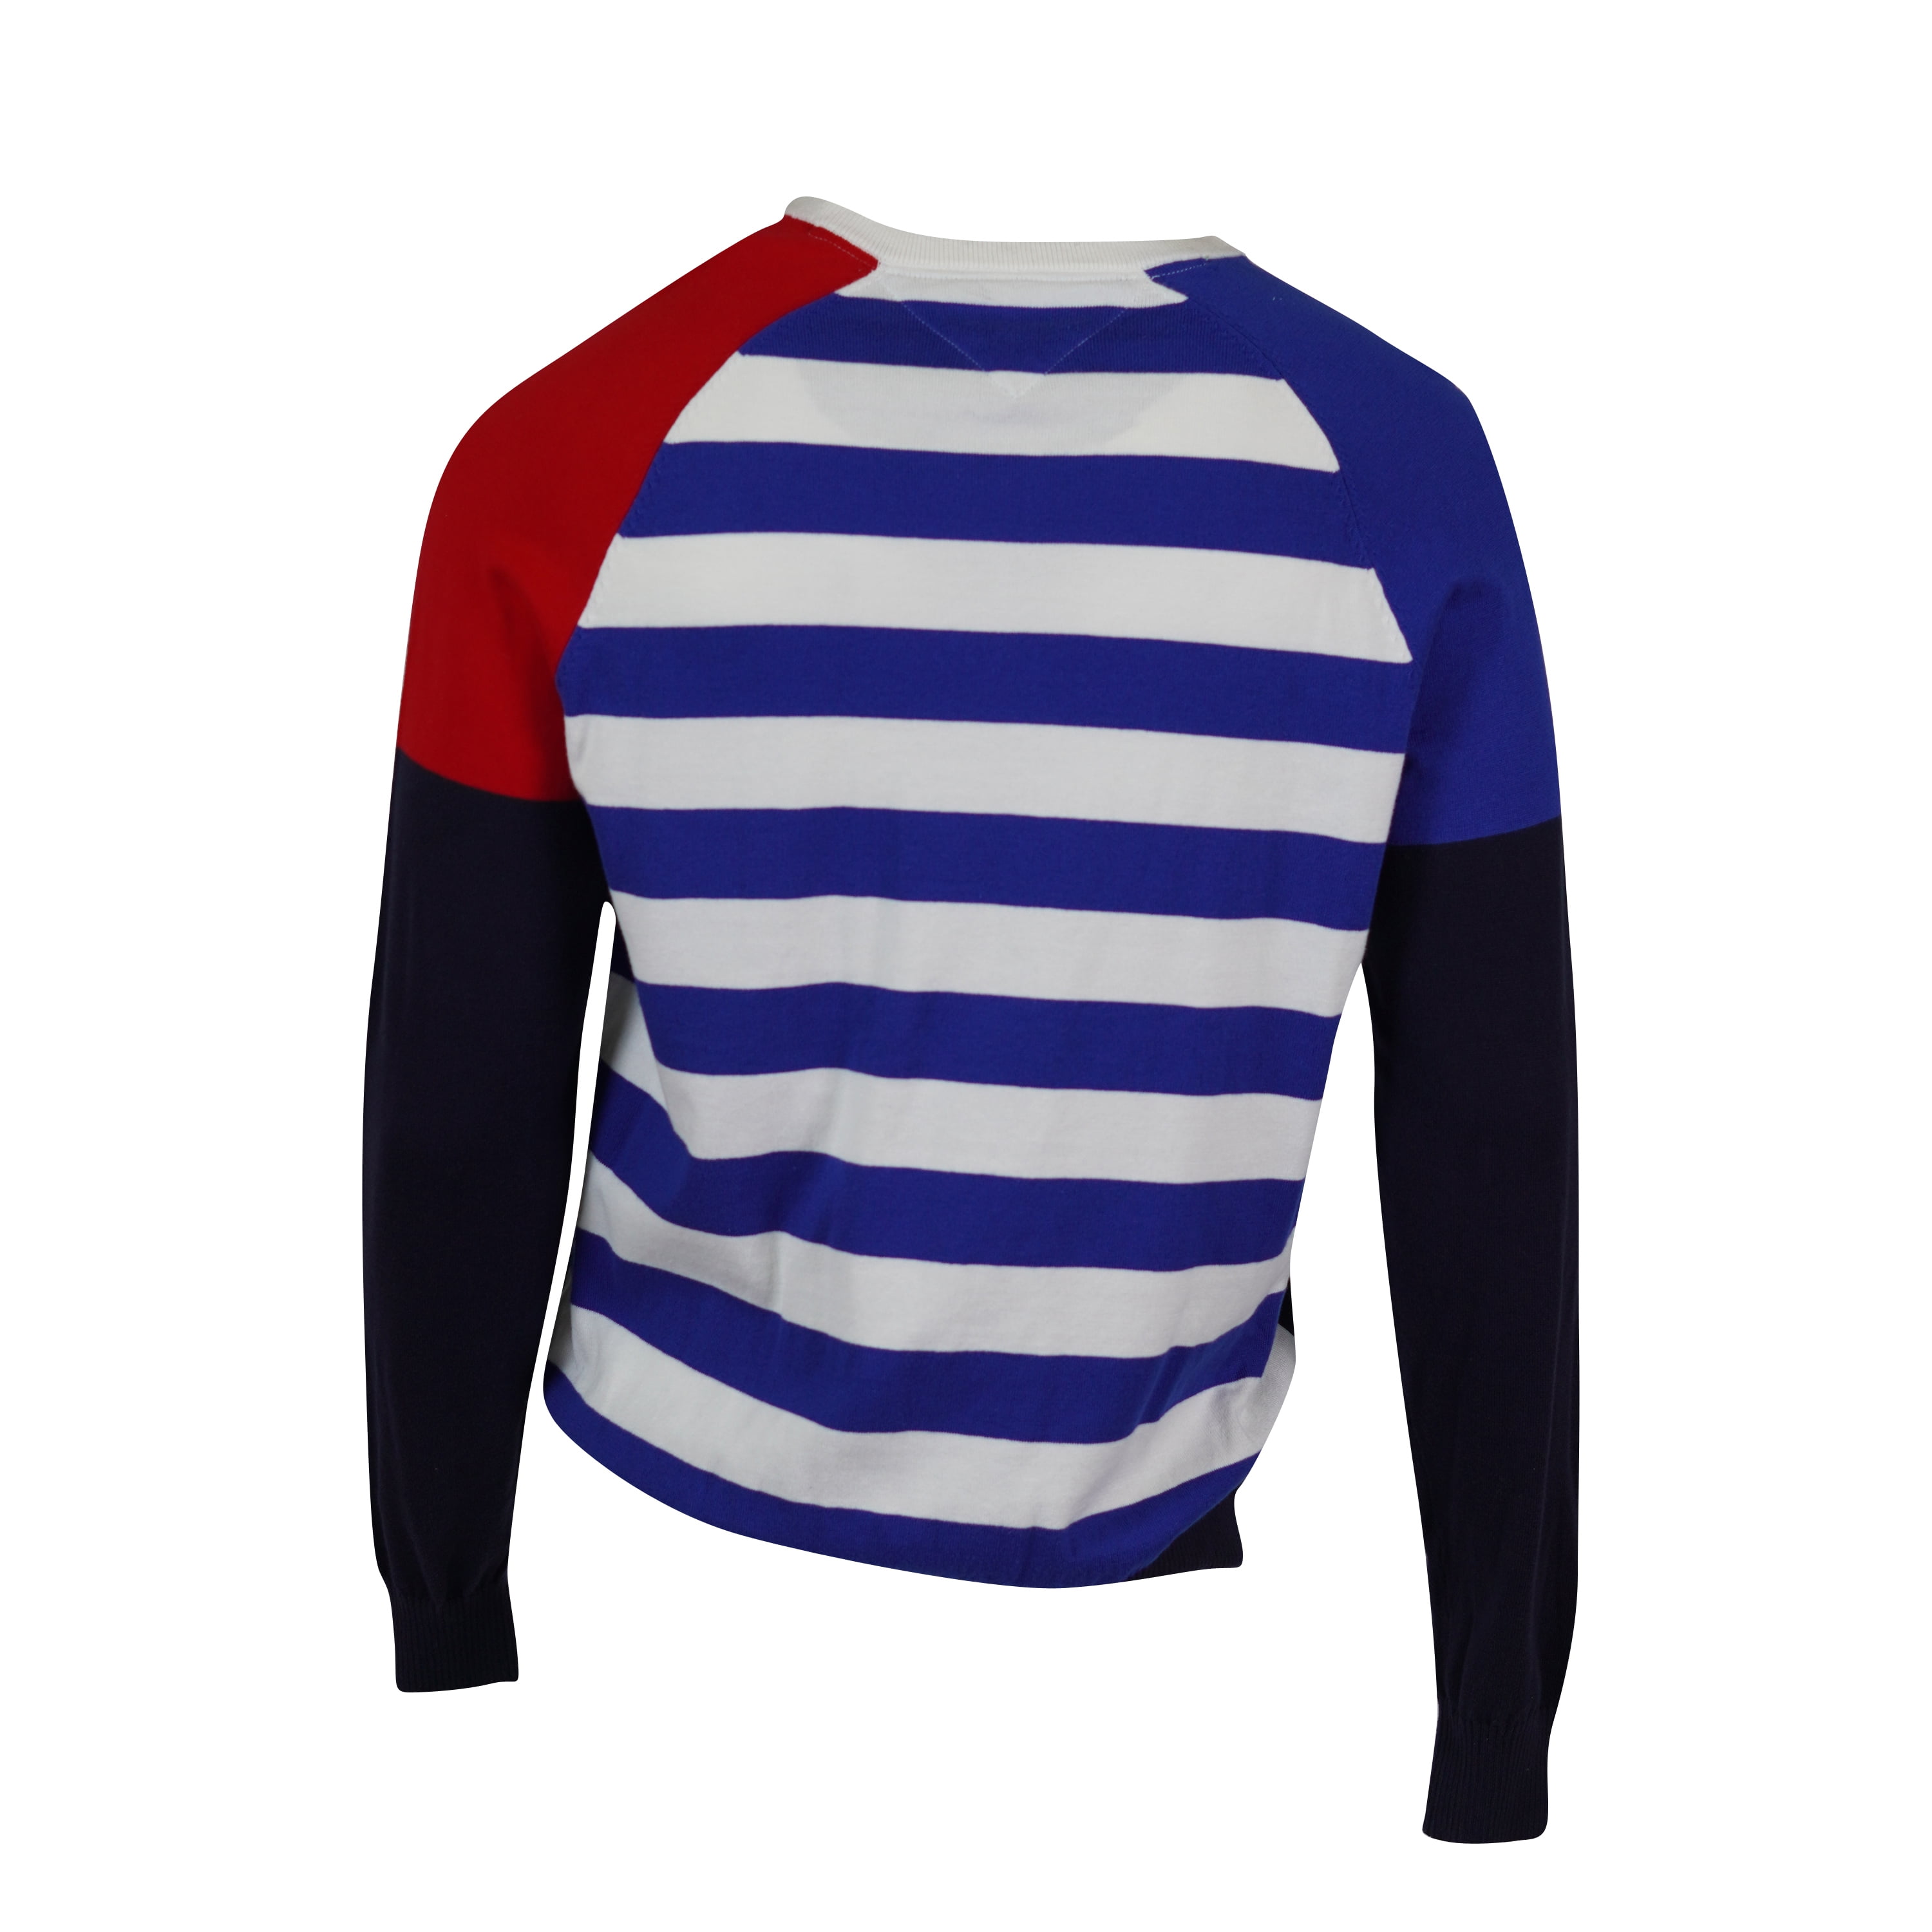 Ventilere Andet gås Tommy Hilfiger Men's Color Block Long Sleeve Sweater Navy Blue Red Size  Large - Walmart.com